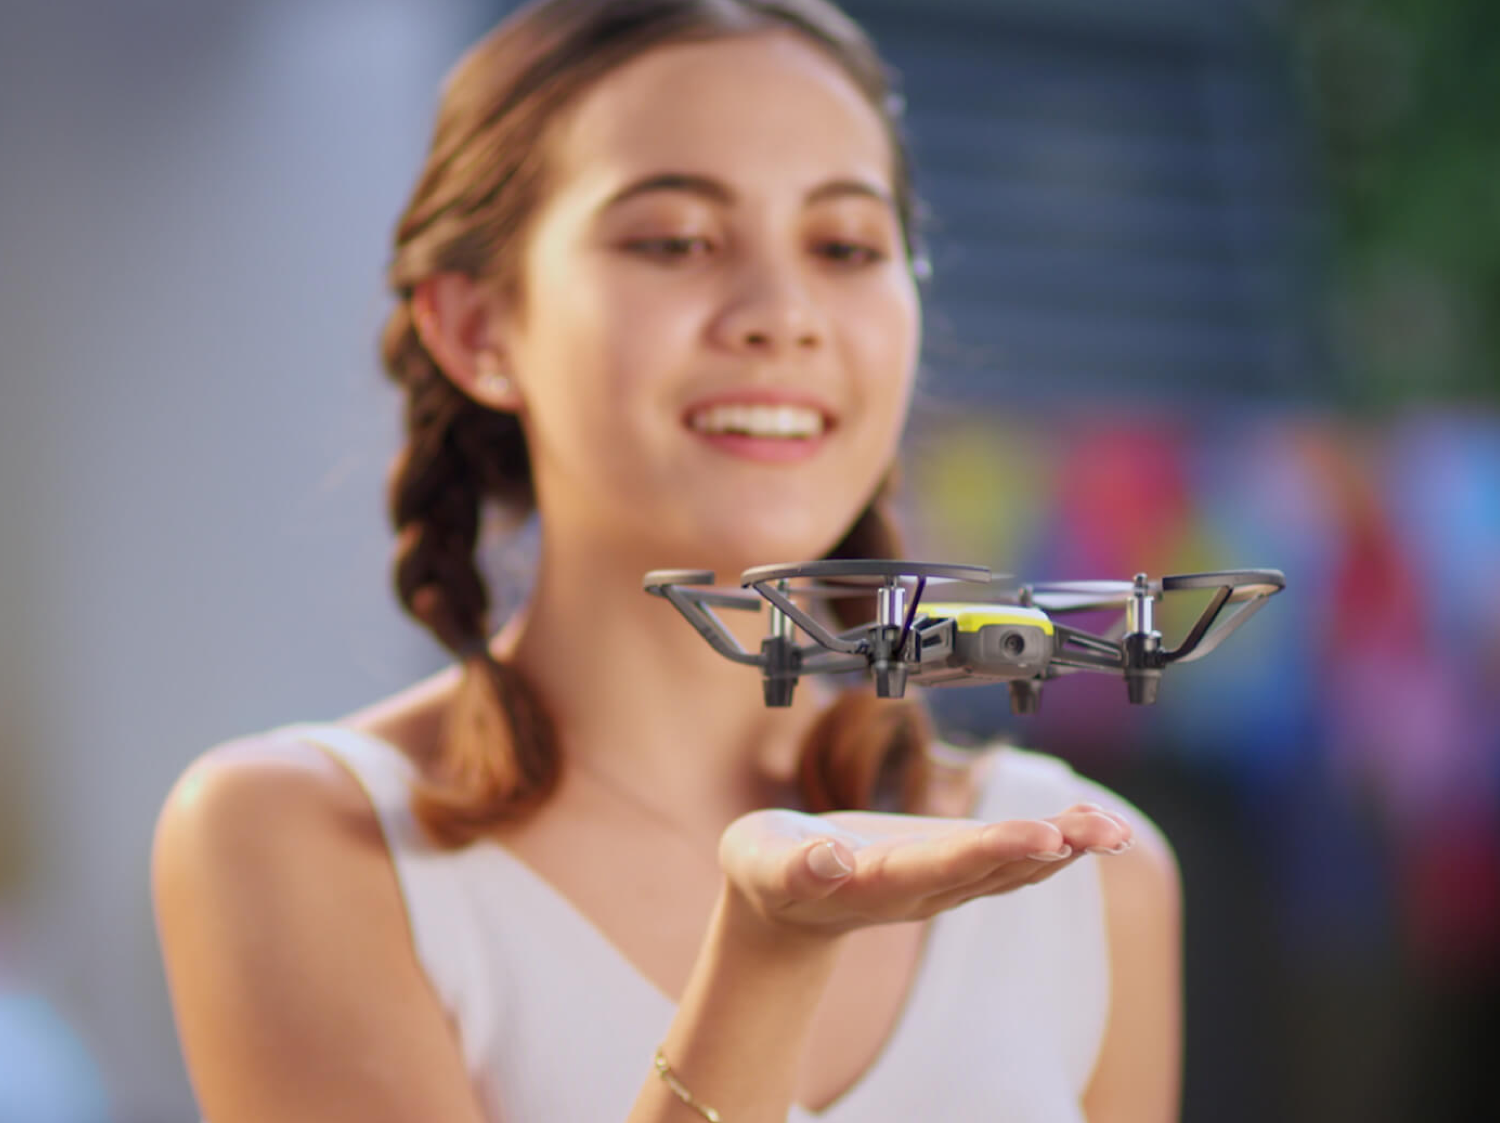 DJI Ryze Tello super scontato: mini drone di qualità per le vostre vacanze a 84,50€